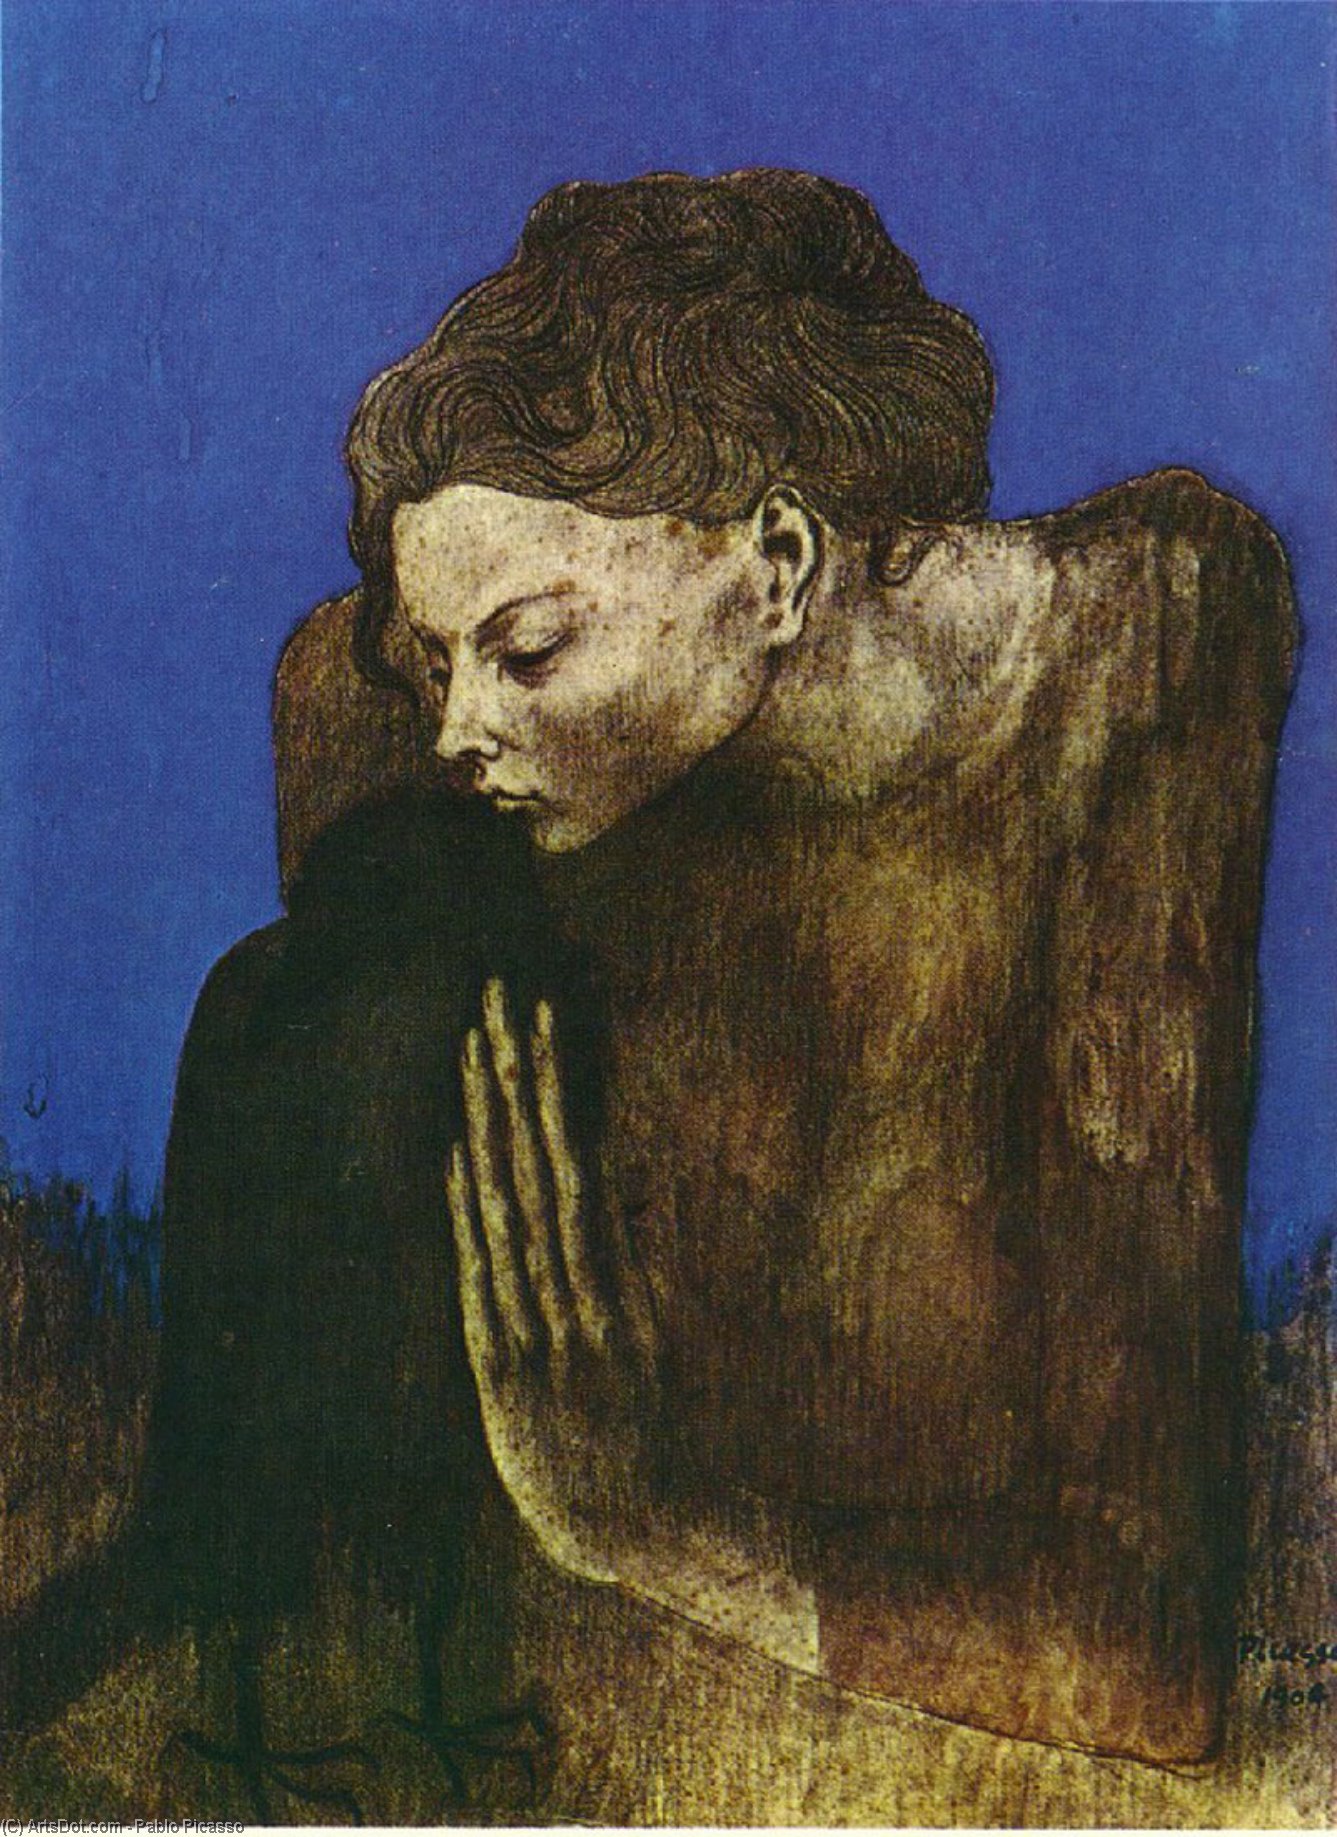 WikiOO.org - אנציקלופדיה לאמנויות יפות - ציור, יצירות אמנות Pablo Picasso - Woman with raven